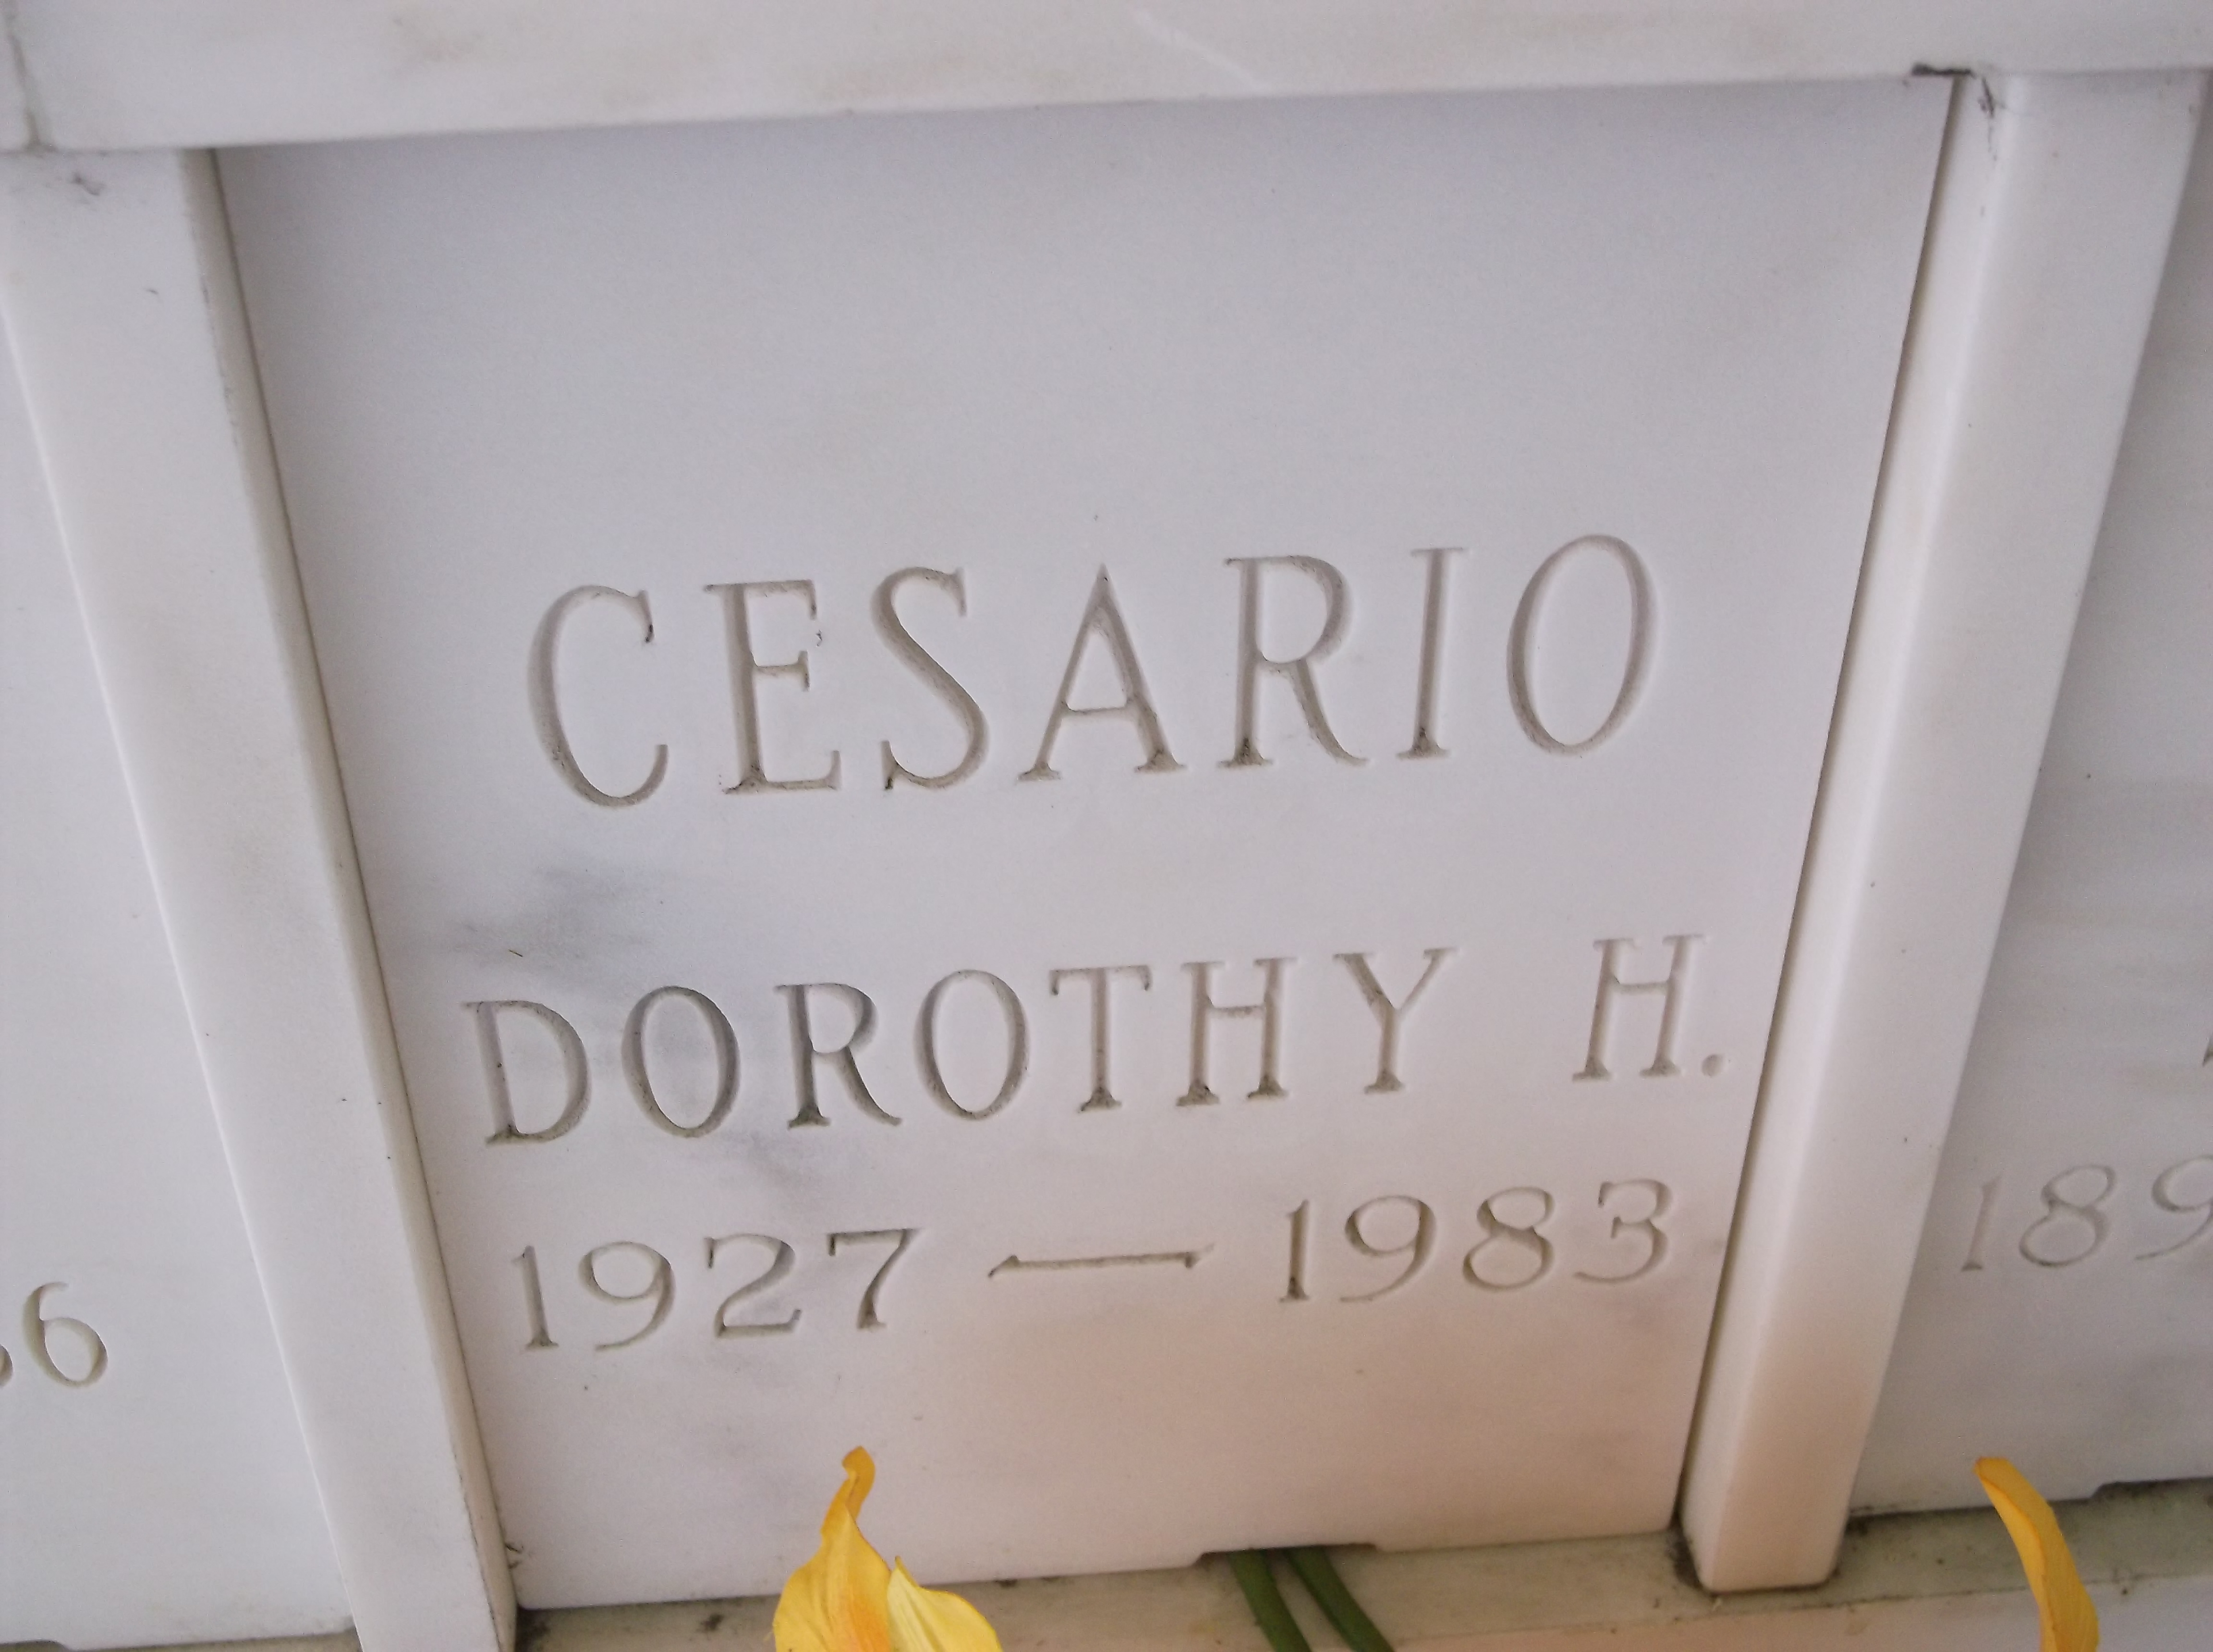 Dorothy H Cesario